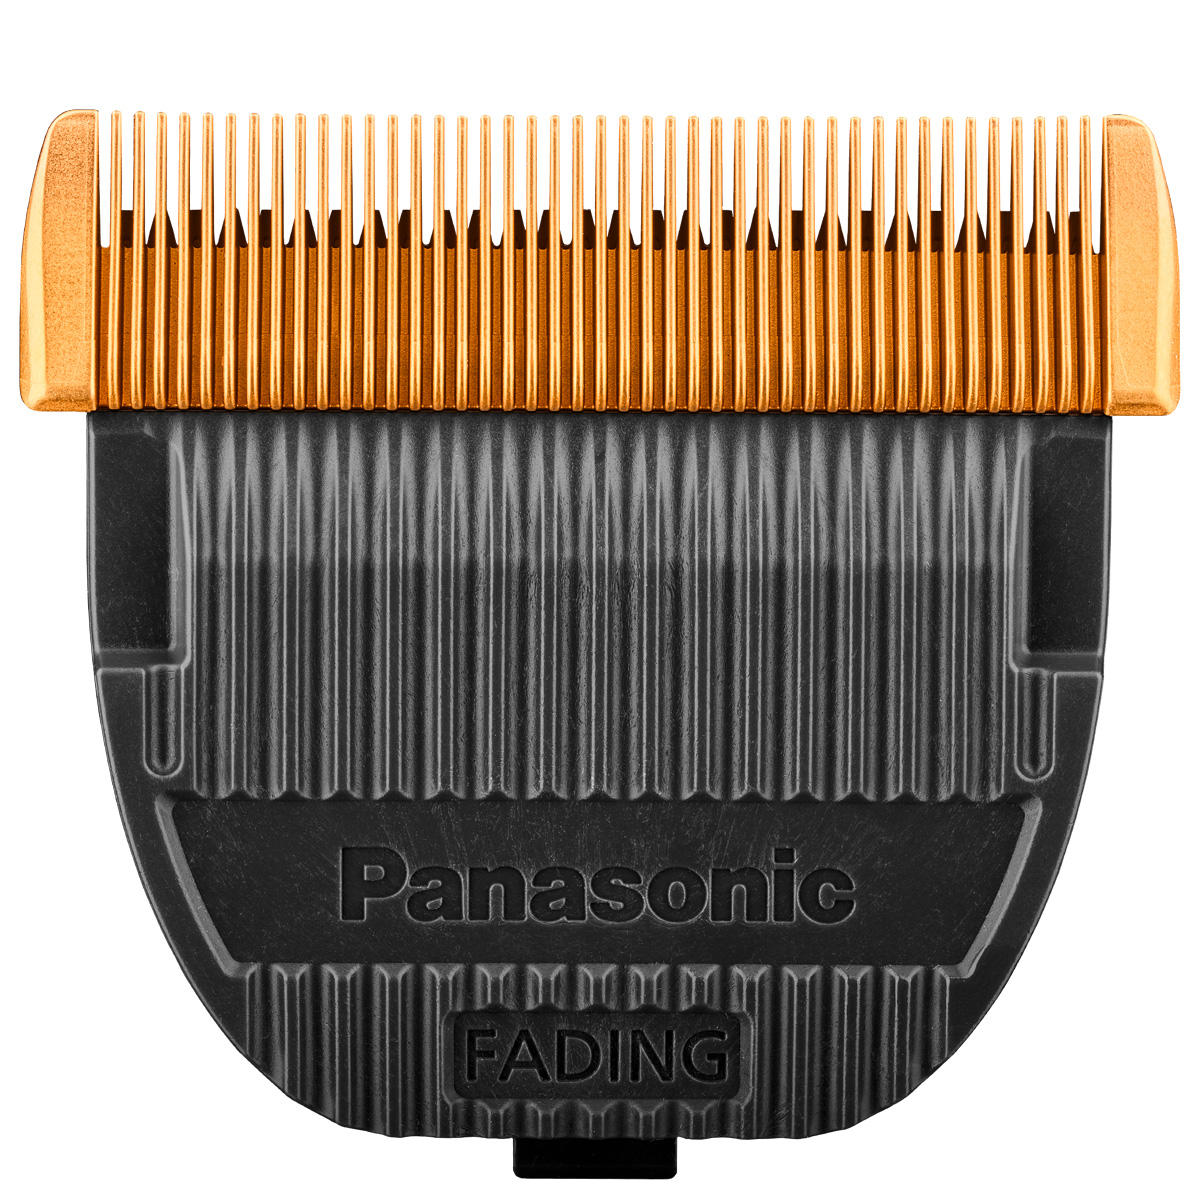 Panasonic Remplacement de la feuille de rasage ER-DGP86  - 2